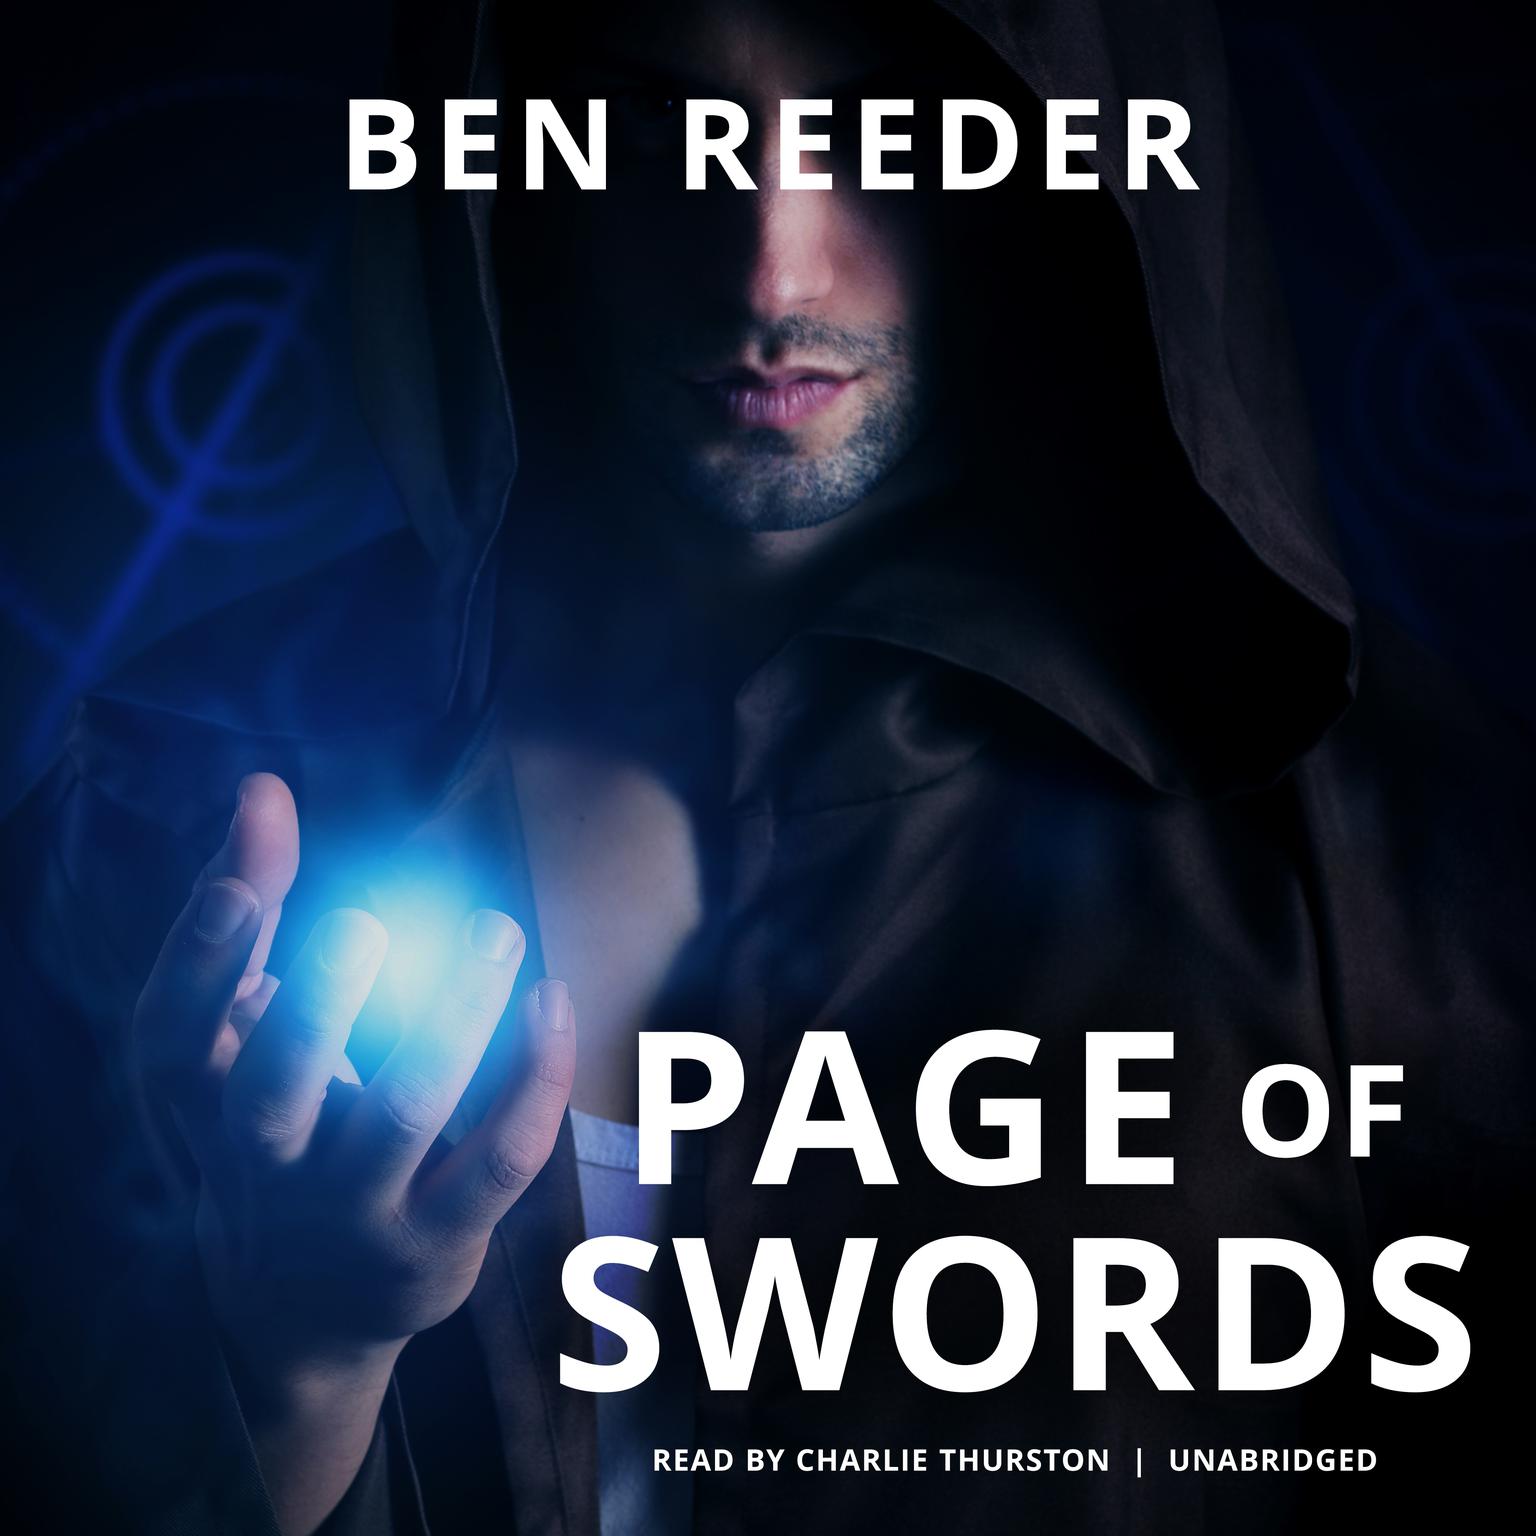 Page of Swords Audiobook, by Ben Reeder